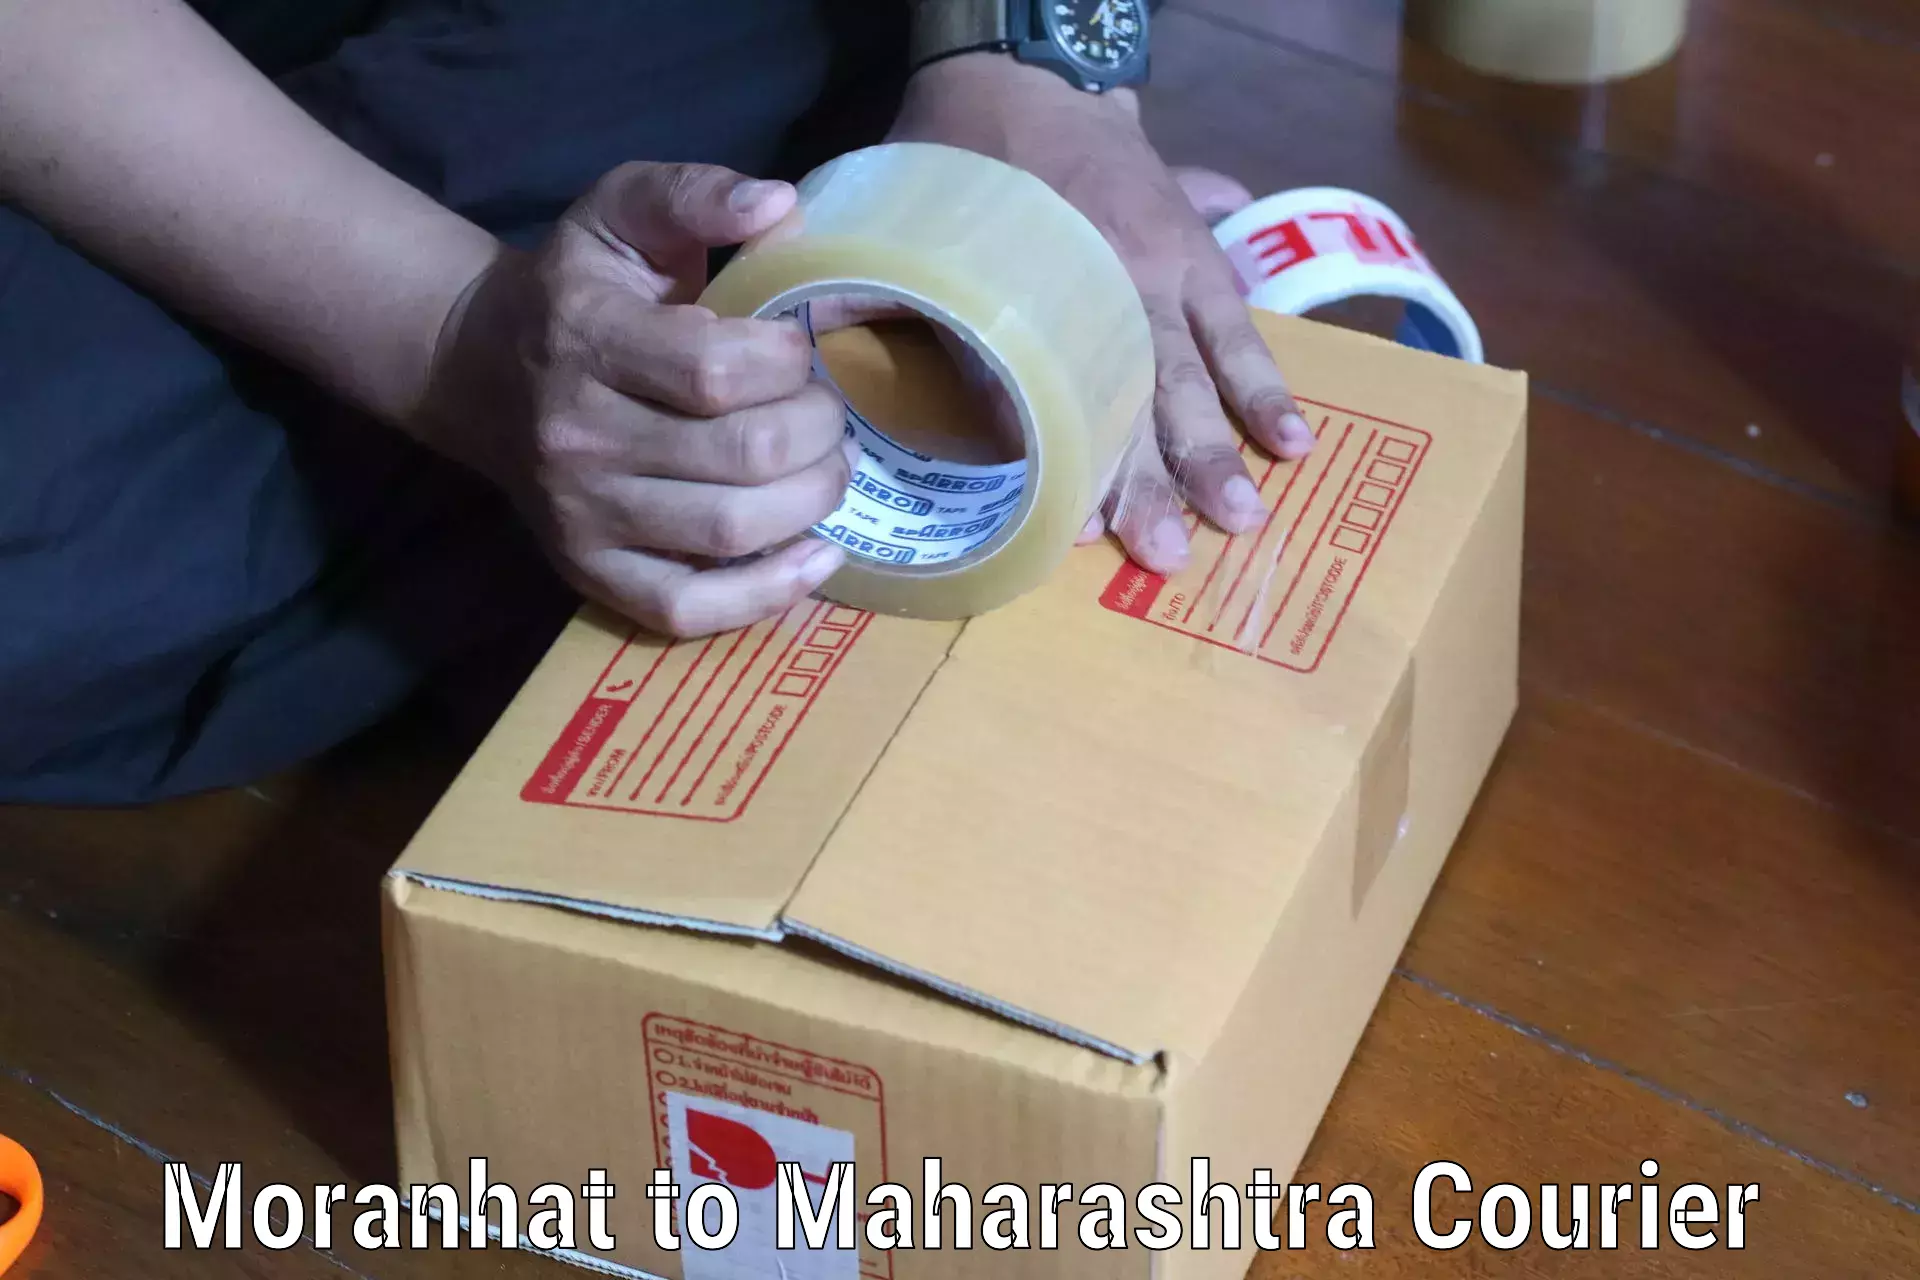 Nationwide parcel services Moranhat to Shrigonda